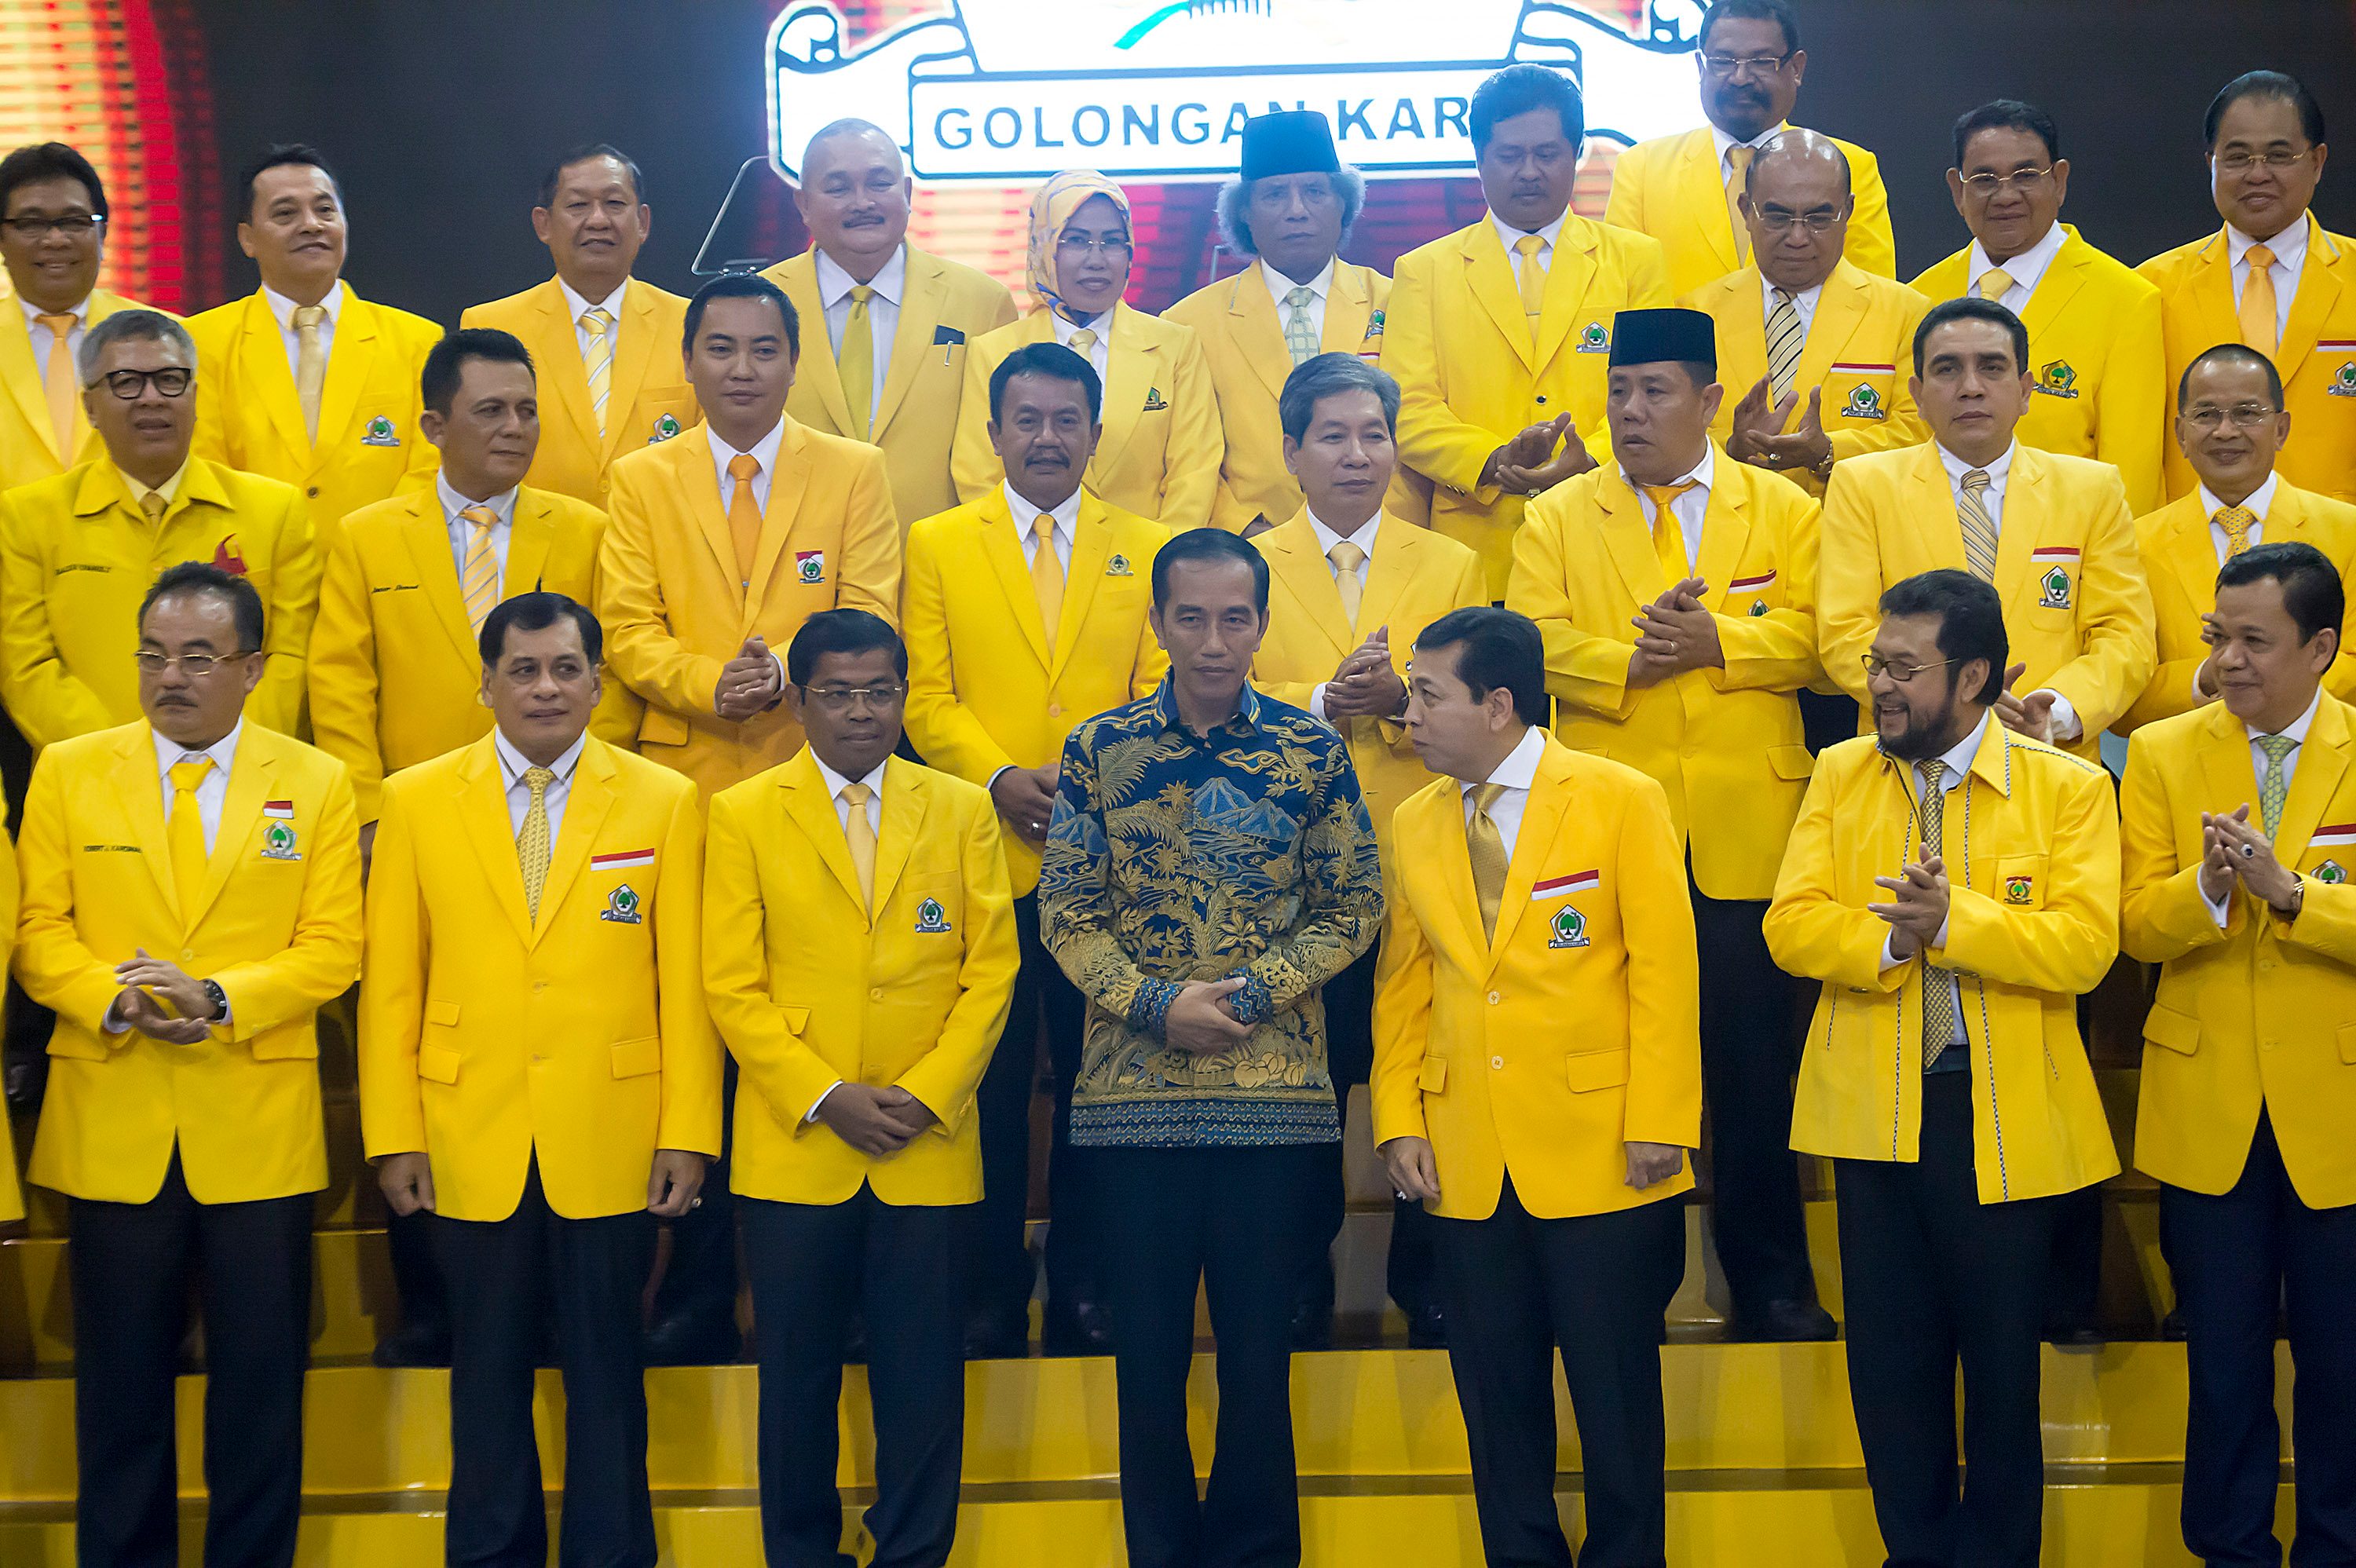 Presiden Jokowi berfoto bersama dengan jajaran pengurus Partai Golkar pada Penutupan Rapimnas I tahun 2016 di Istora Senayan, Jakarta, pada 28 Juli 2016. Foto oleh Widodo S. Jusuf/Antara 